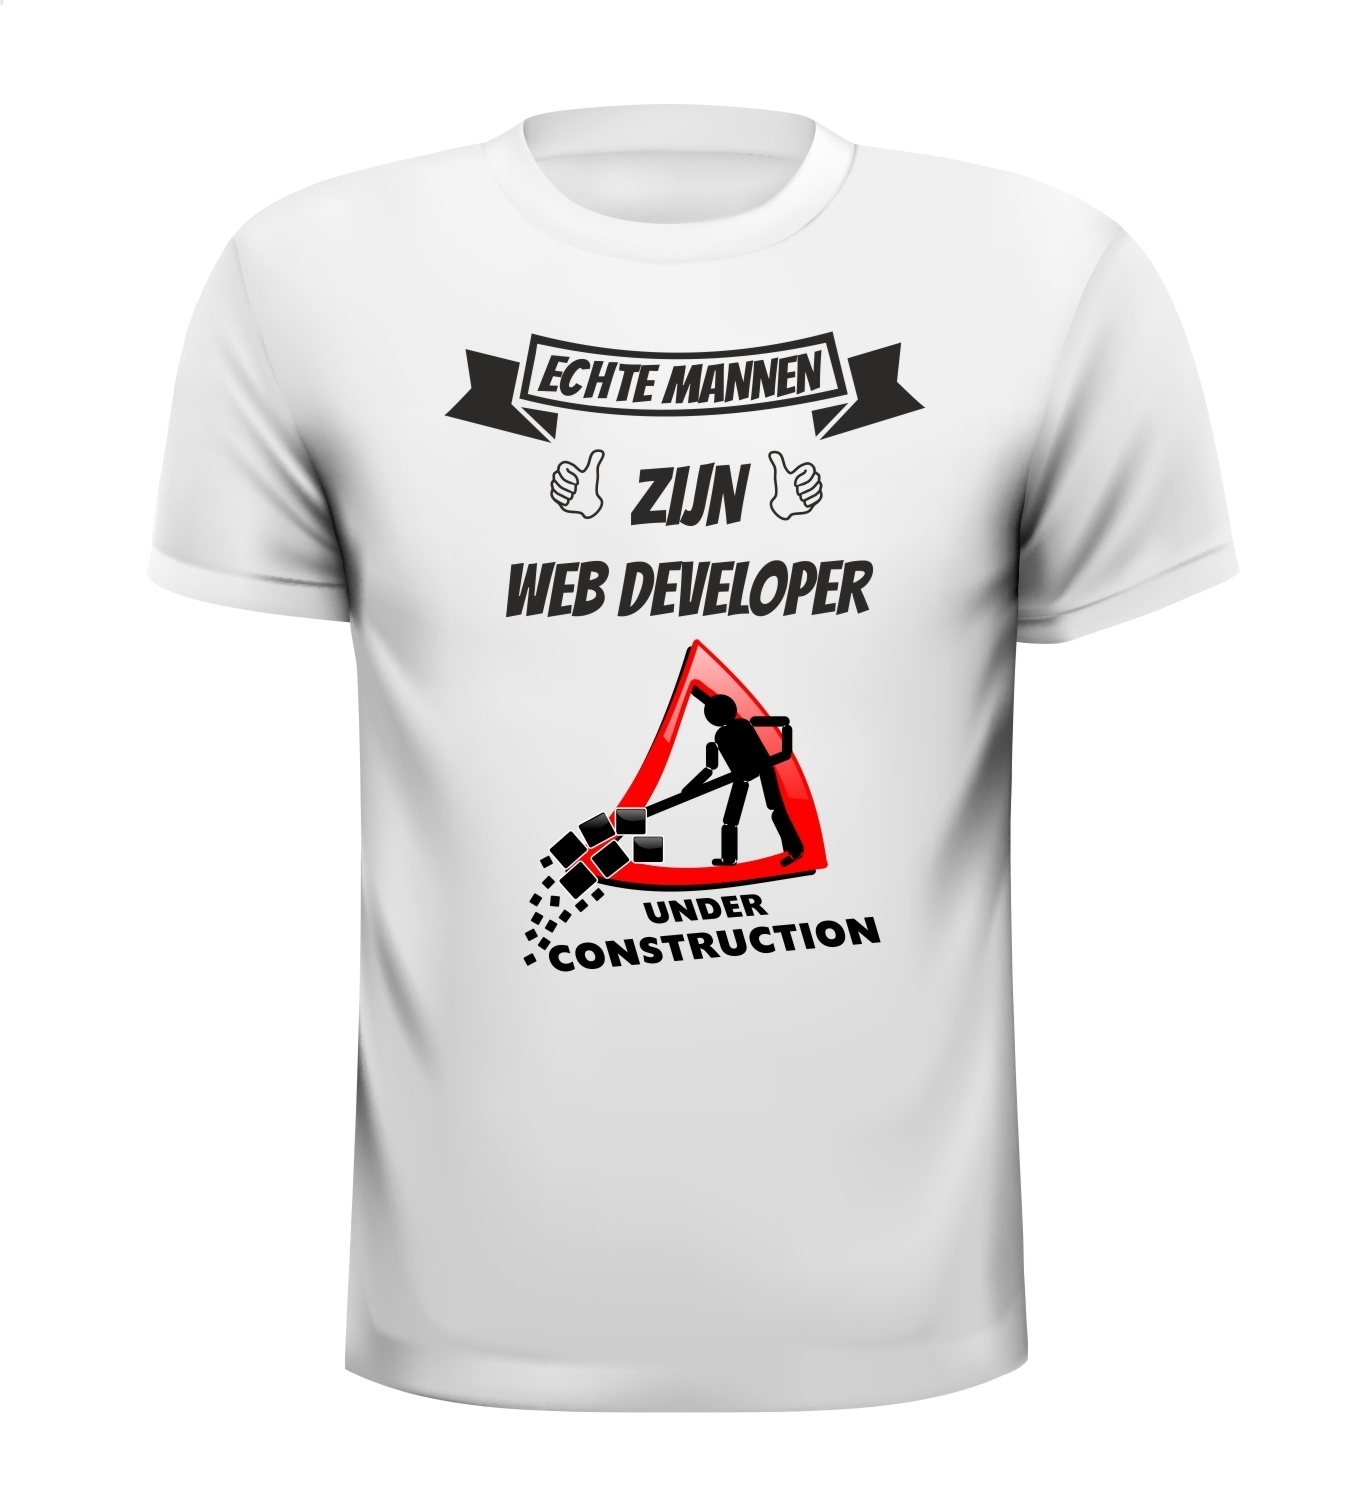 Echte mannen zijn web developer T-shirt